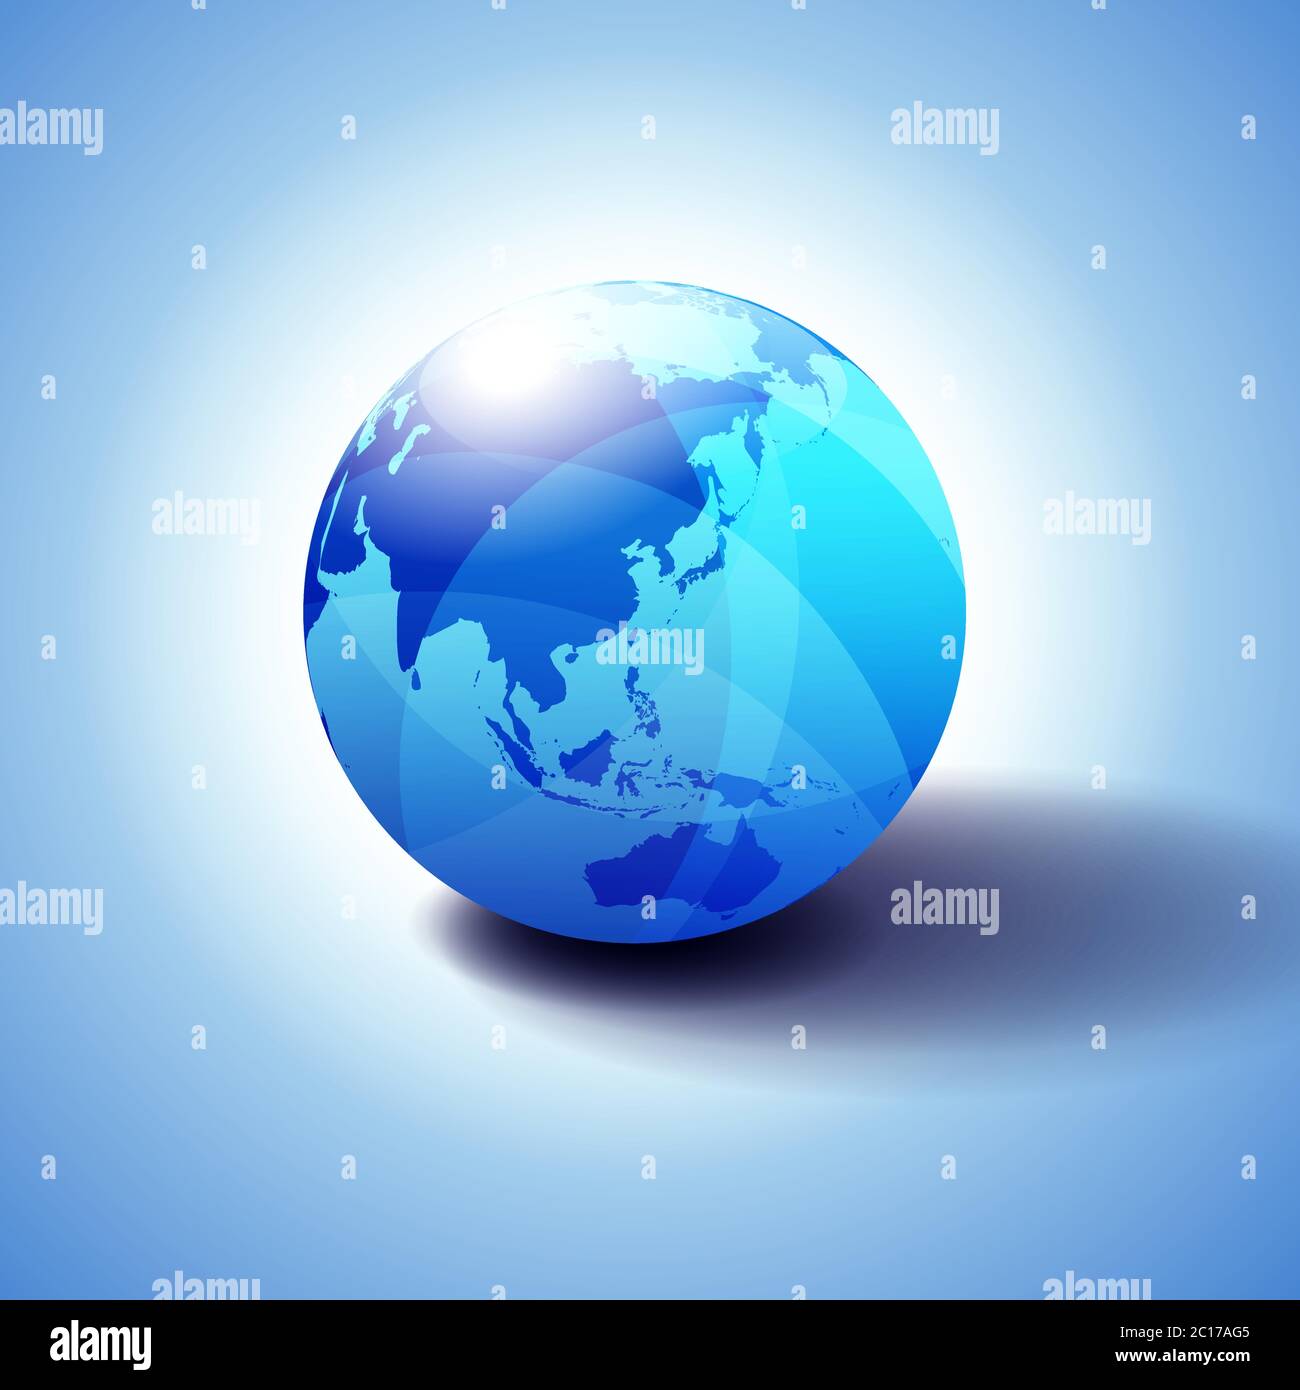 Fernost China, Japan, Malaysia, Thailand und Indonesien, Hintergrund mit Globe Icon 3D-Illustration Stock Vektor